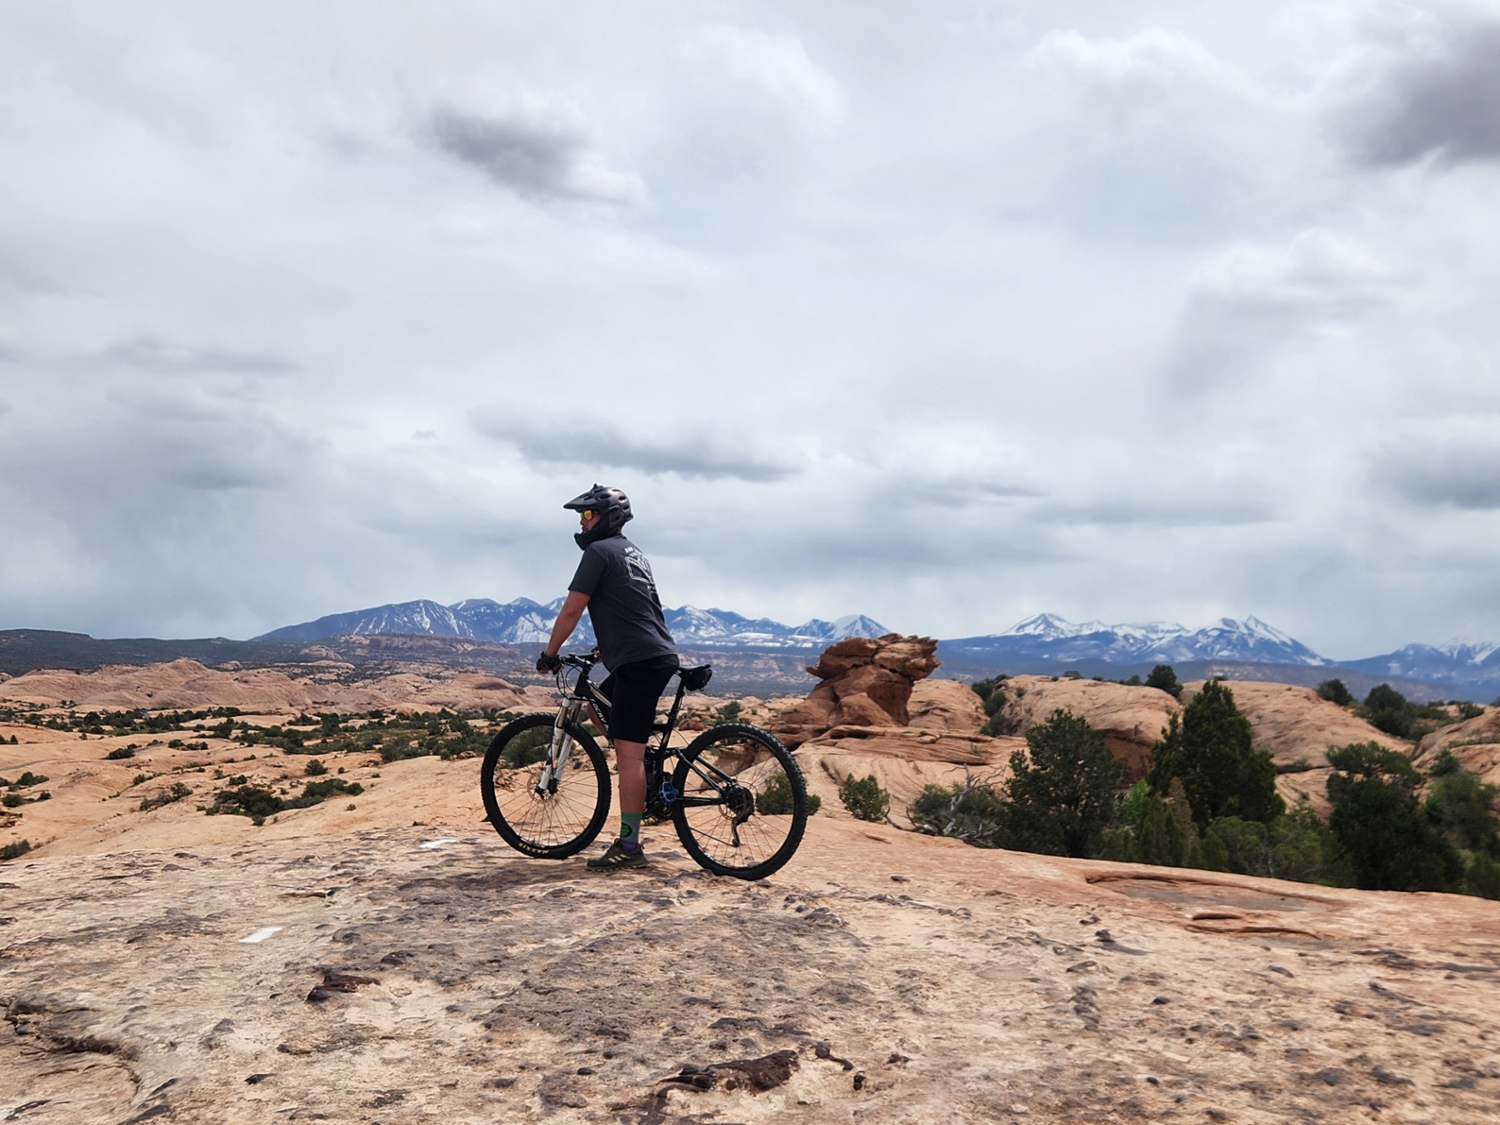 Mountain biking in Moab, Utah.